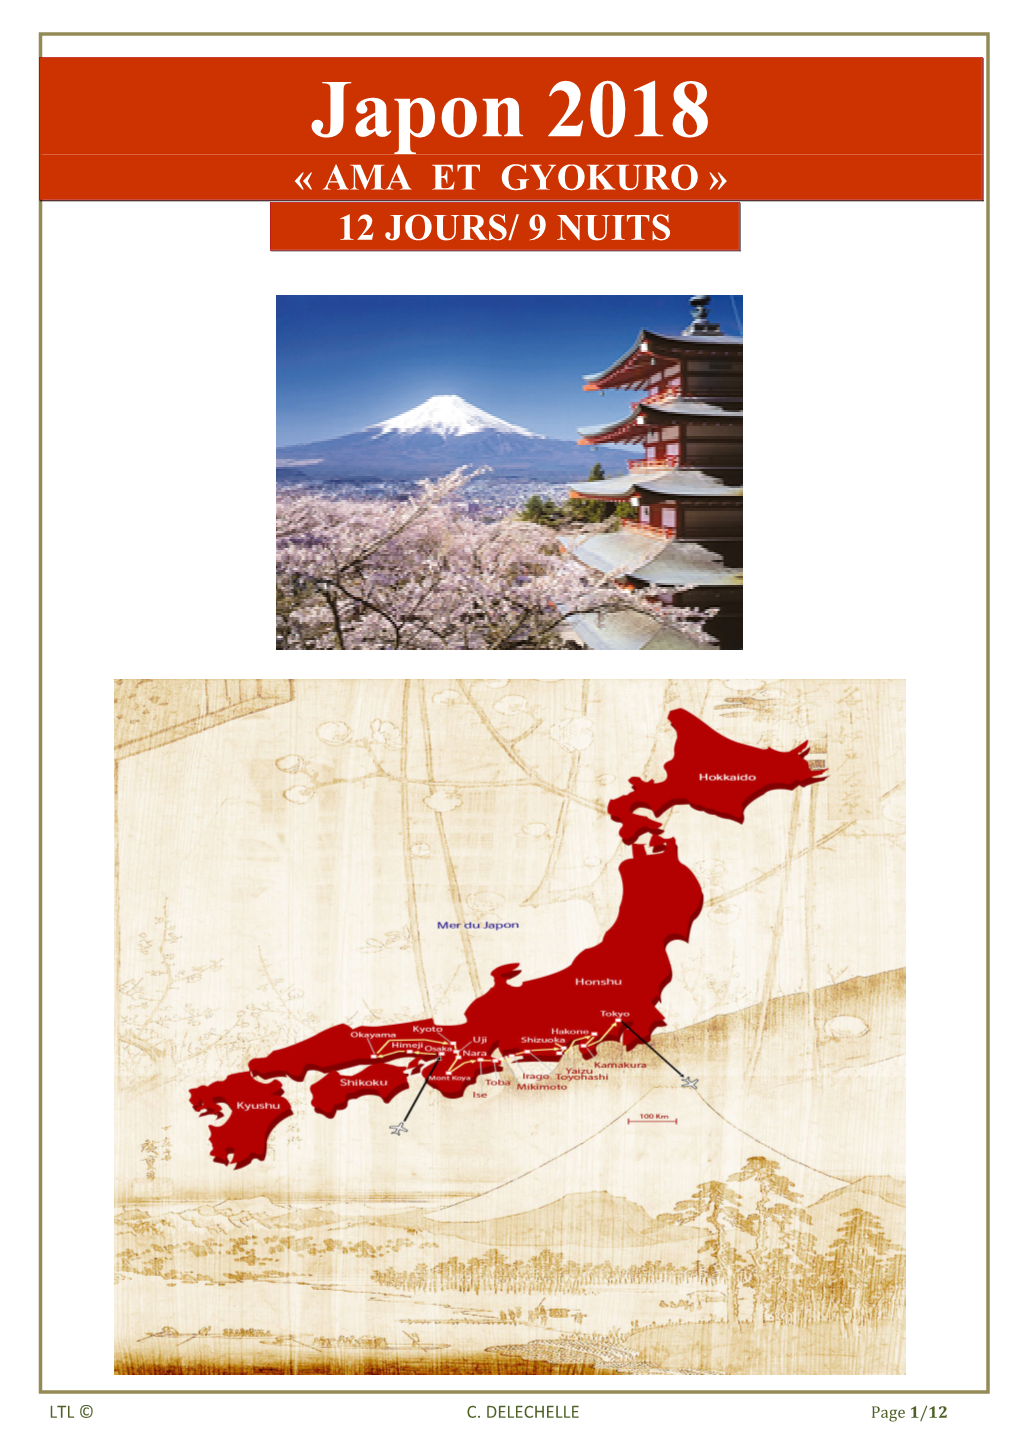 Japon 2018 « AMA ET GYOKURO » 12 JOURS/ 9 NUITS